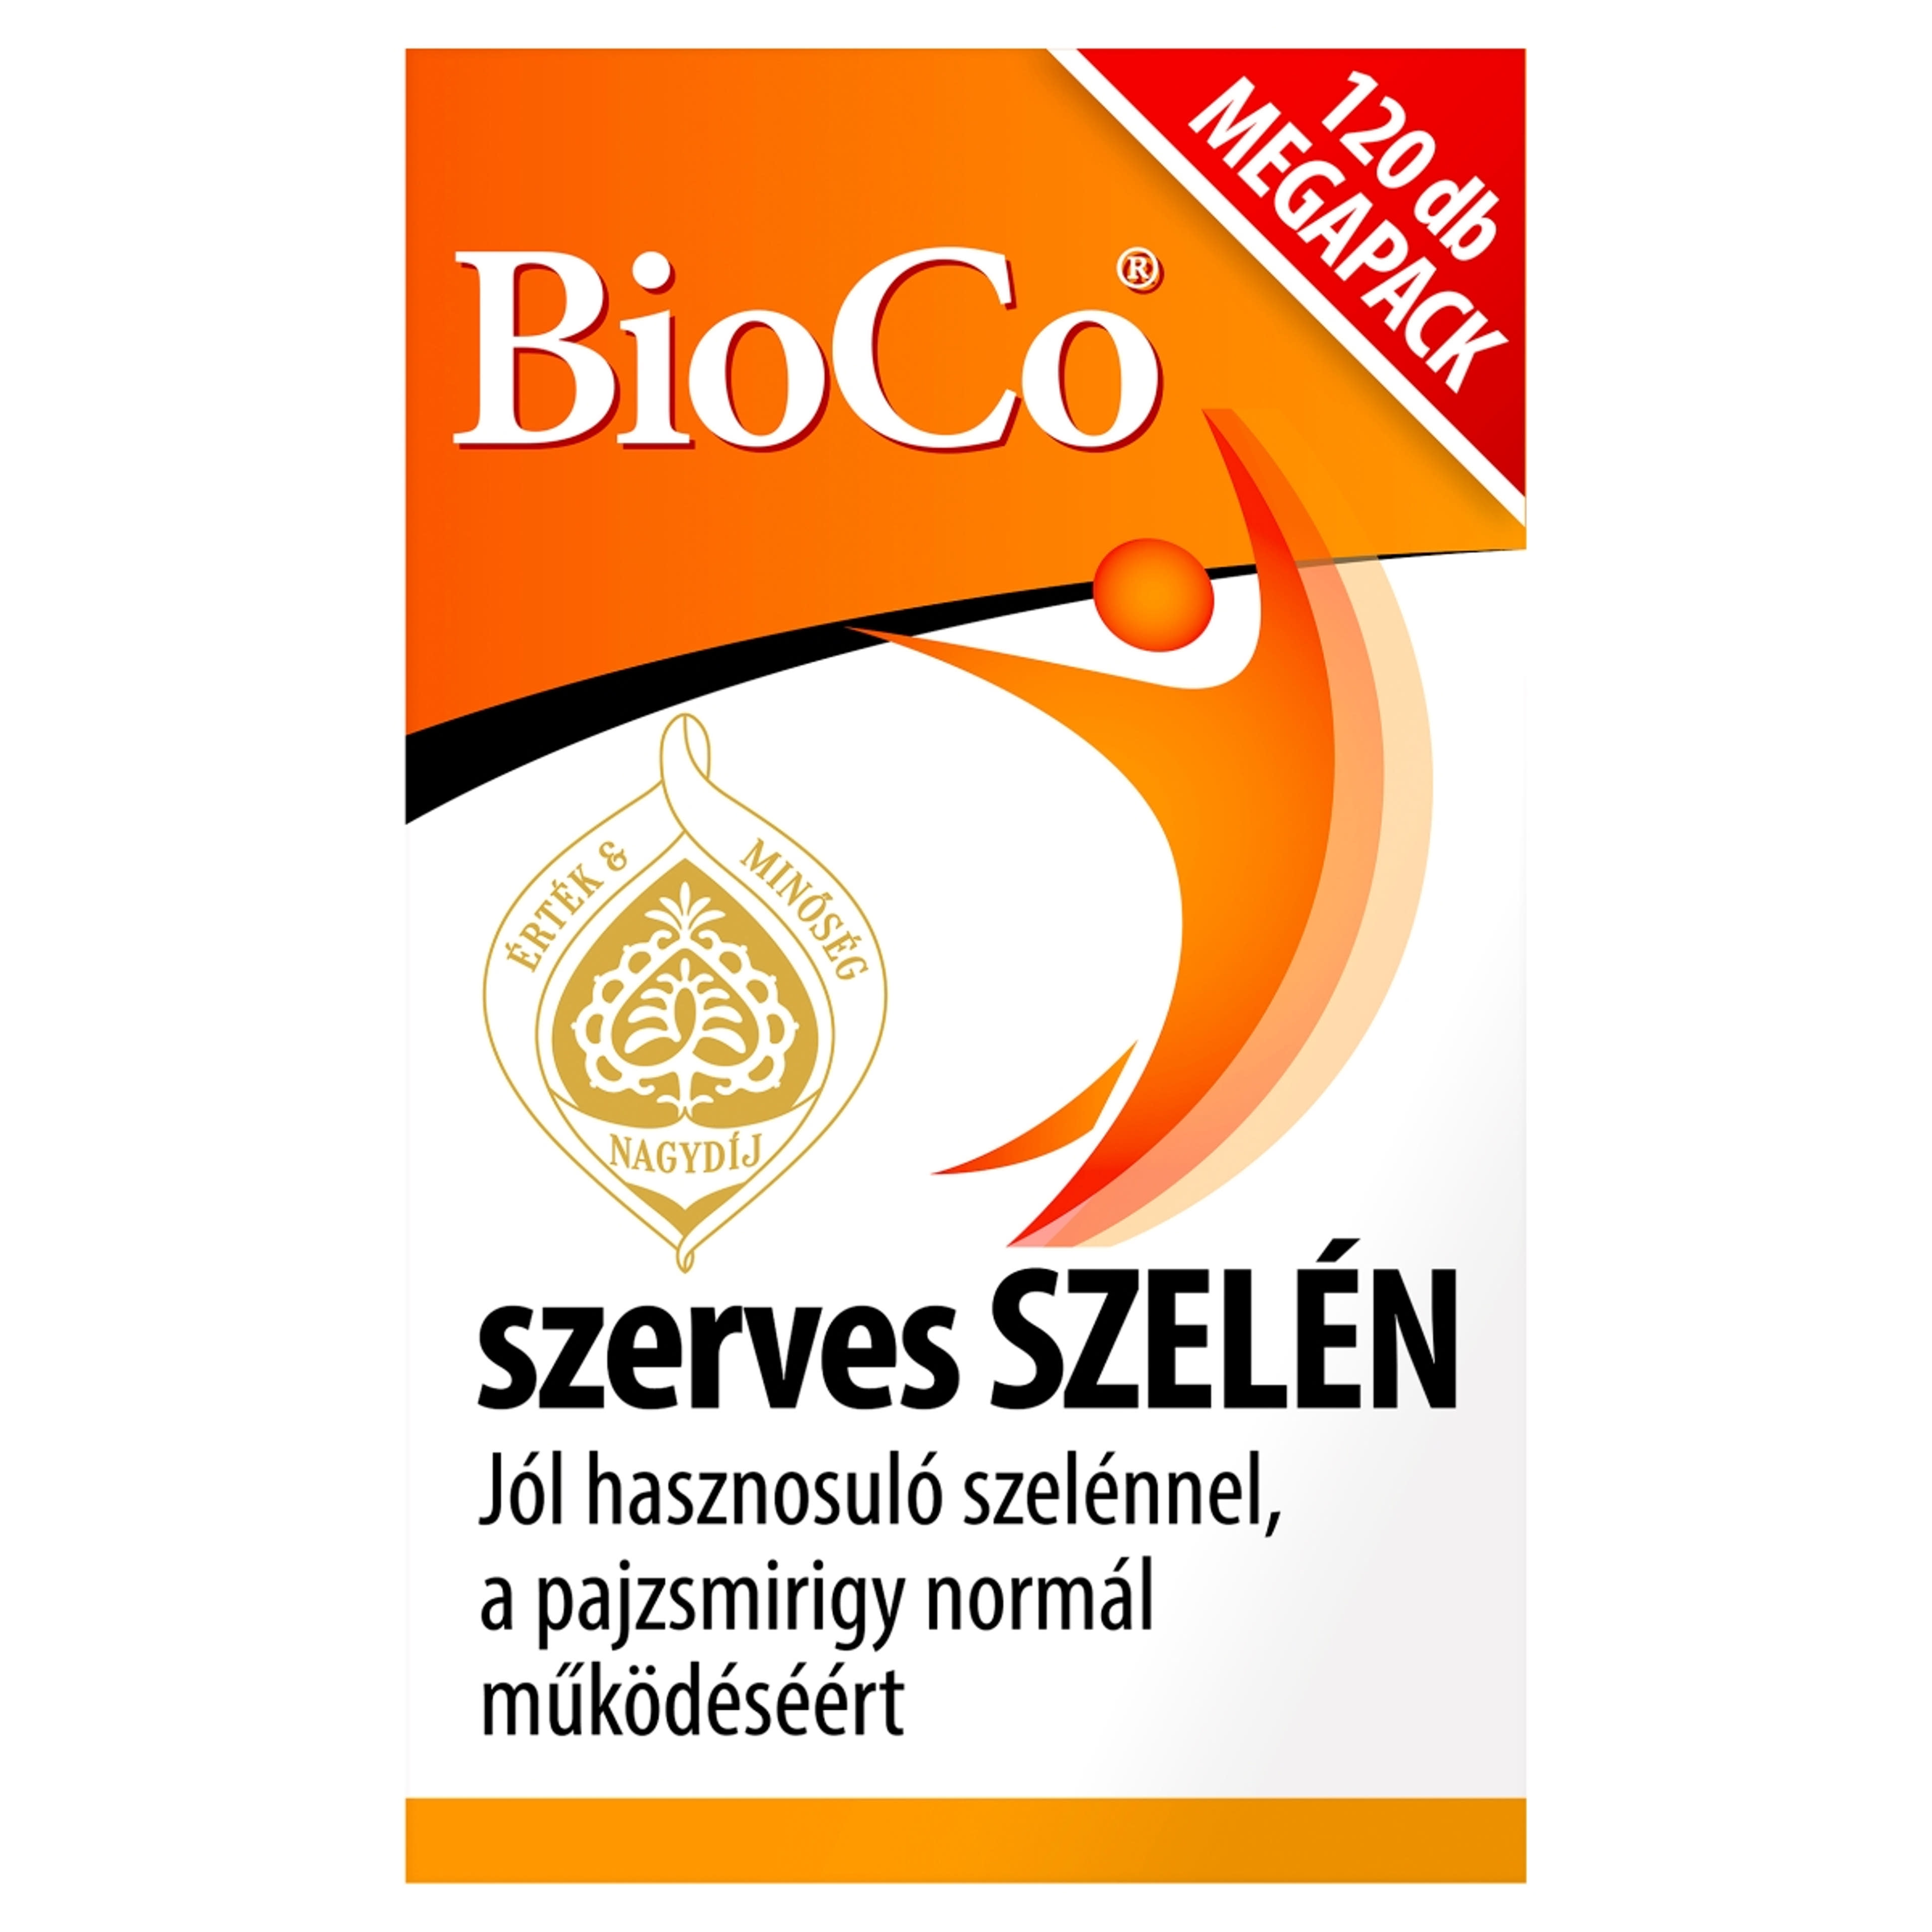 Bioco szerves szelén megapack tabletta - 120 db-1